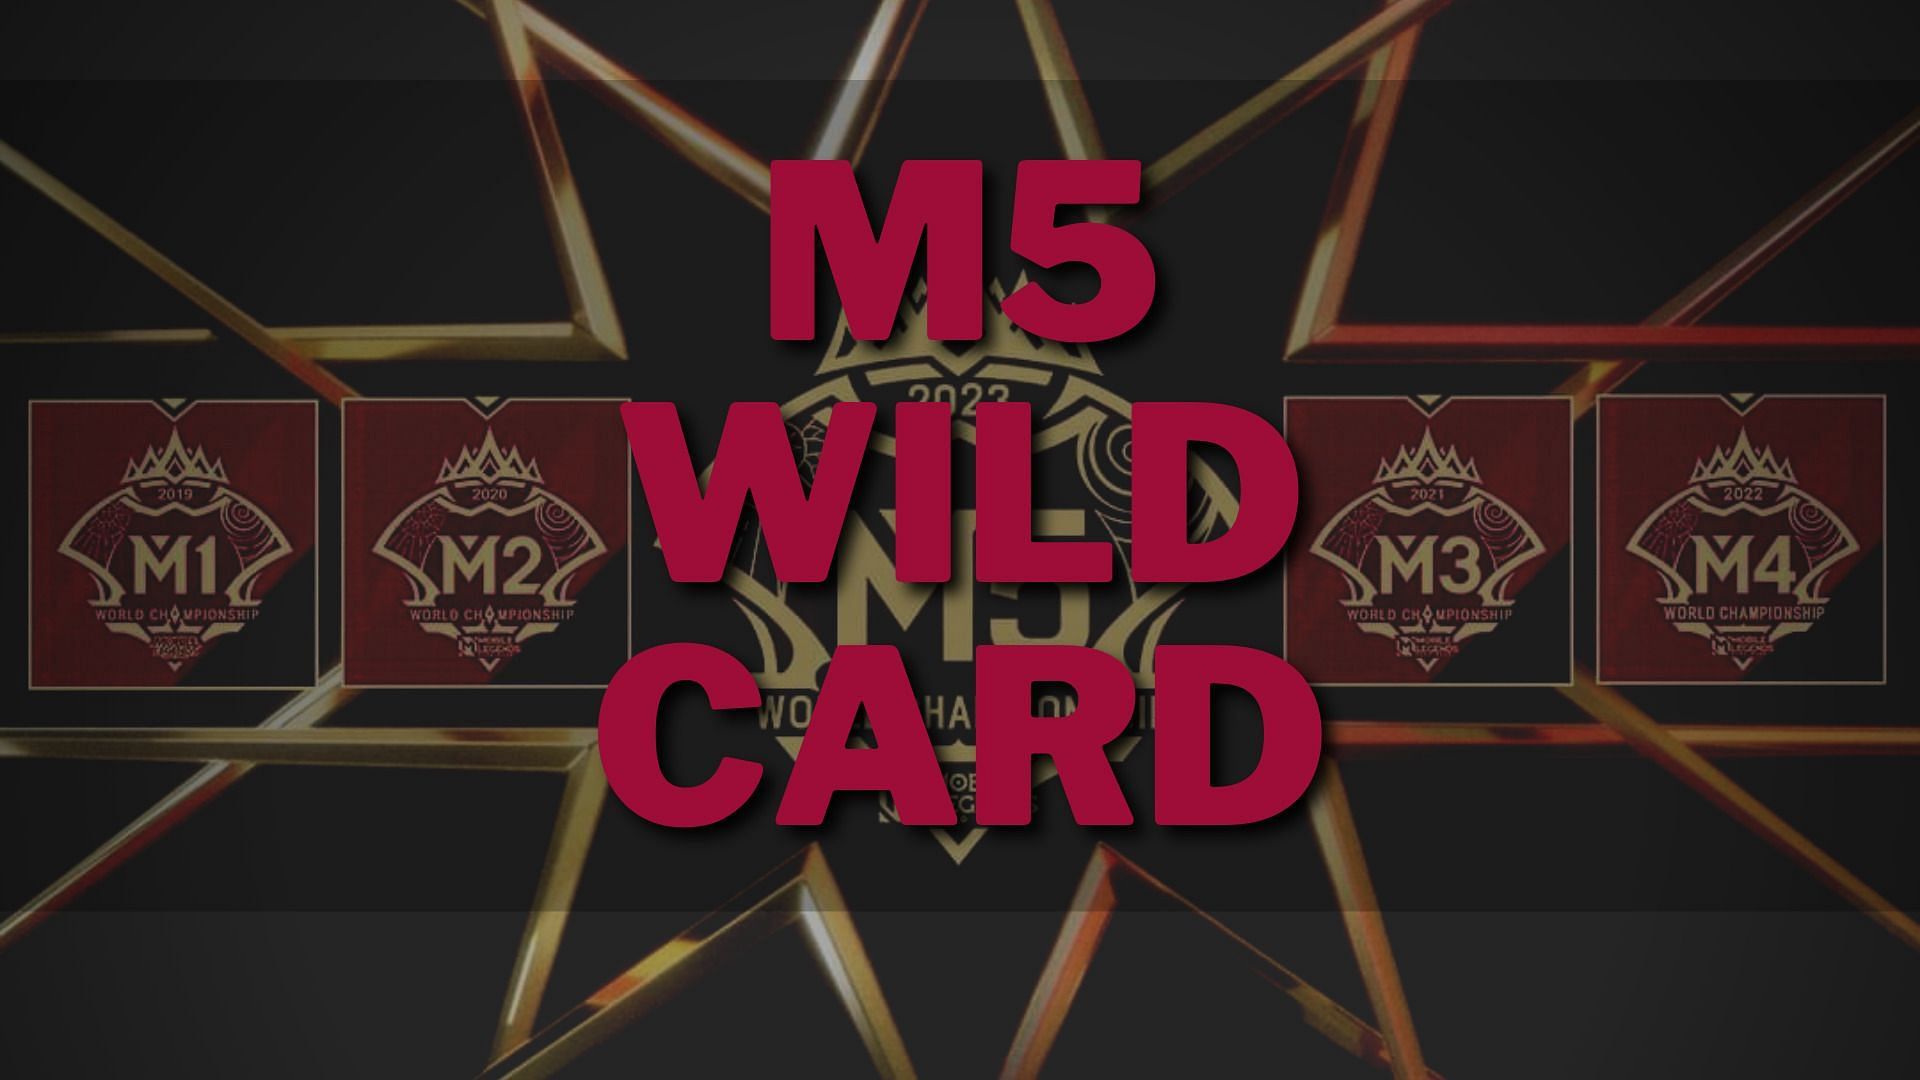 M5 World Championship: Dates, schedule, teams, prize & wildcard qualifier -  Dexerto